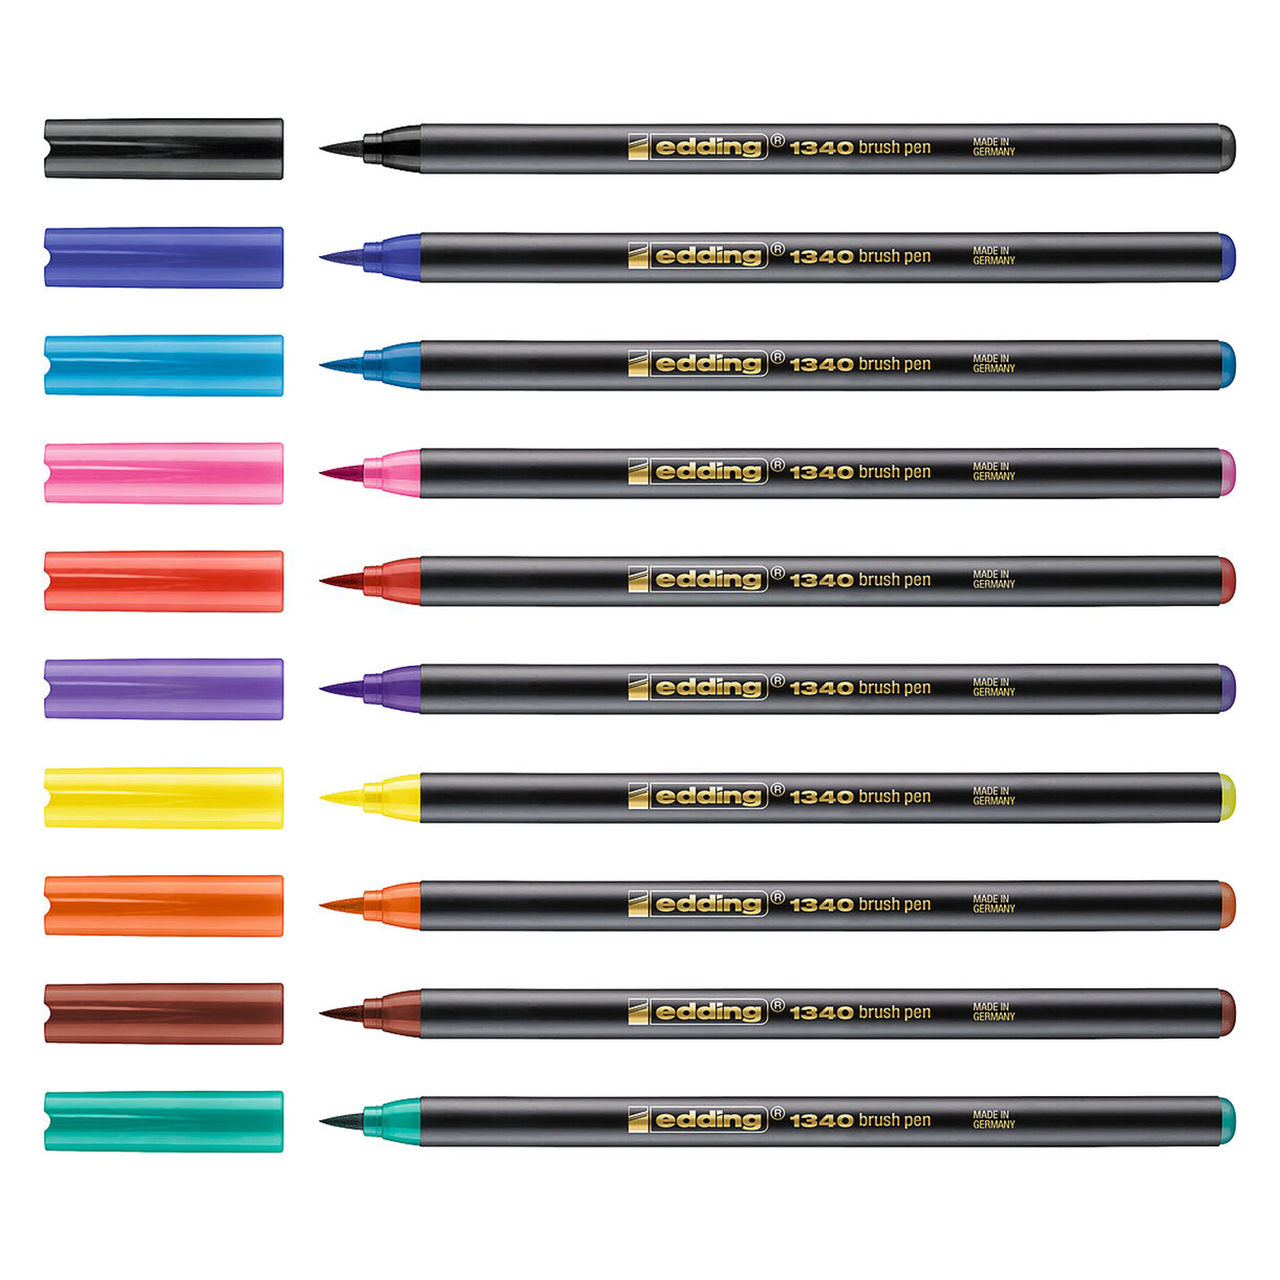 passend interview zonne edding 1340 Brush Pen, Brush Lettering Starter Set of 10